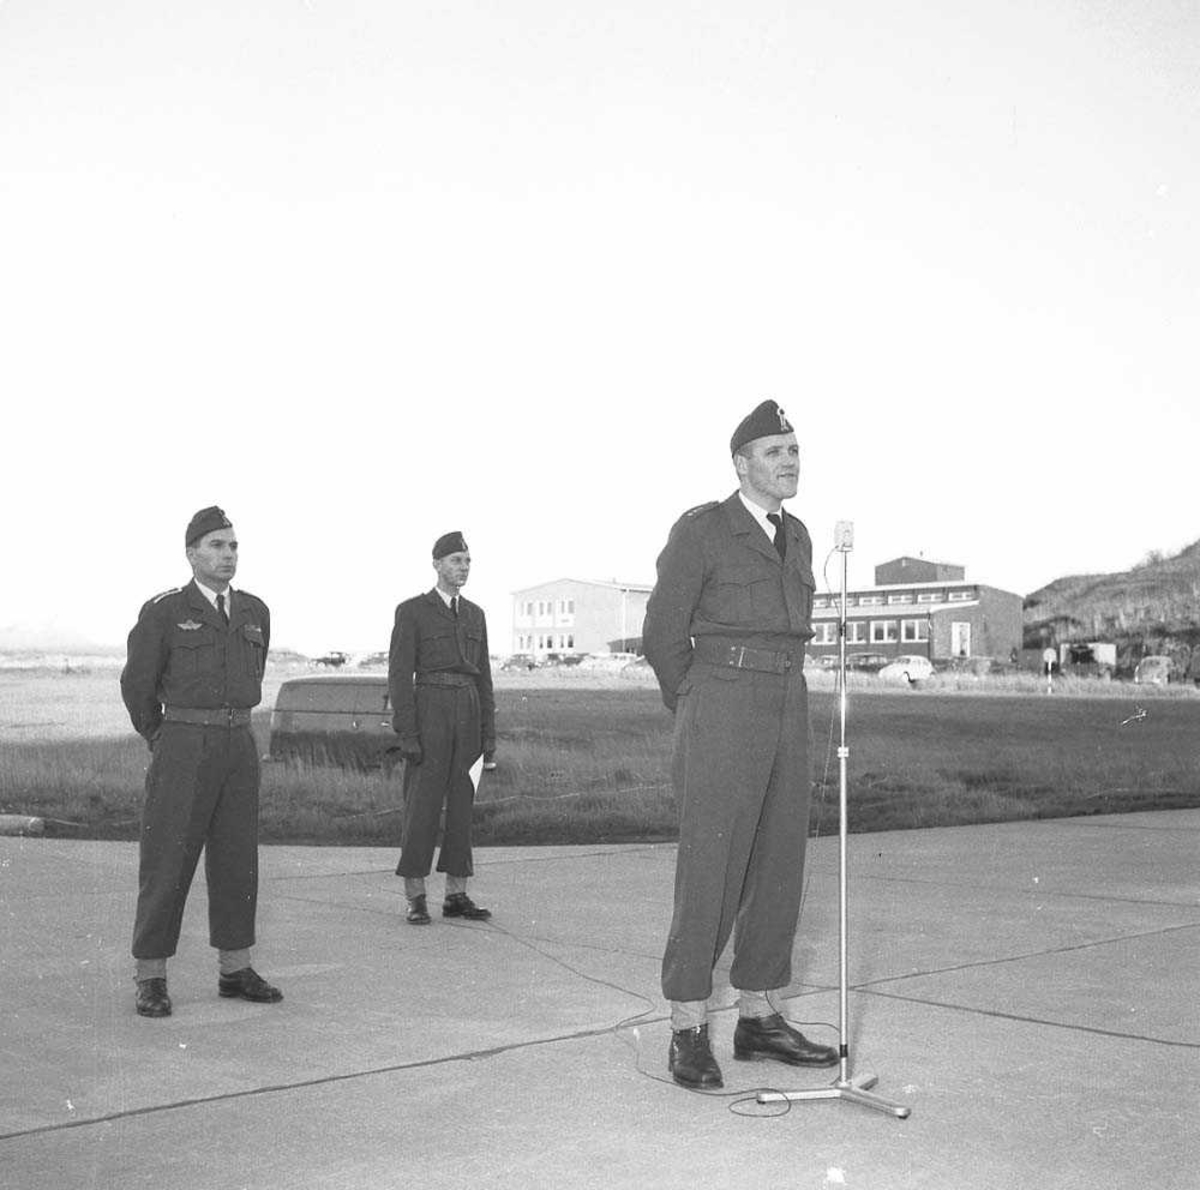 Stasjonsoppstilling ifm Flyvåpenets 15 års dag. Her taler stasjonspresten, Kapt. O. Tysnes (fremst) og bak til venstre sees Oblt. Th. Heine Eriksen.